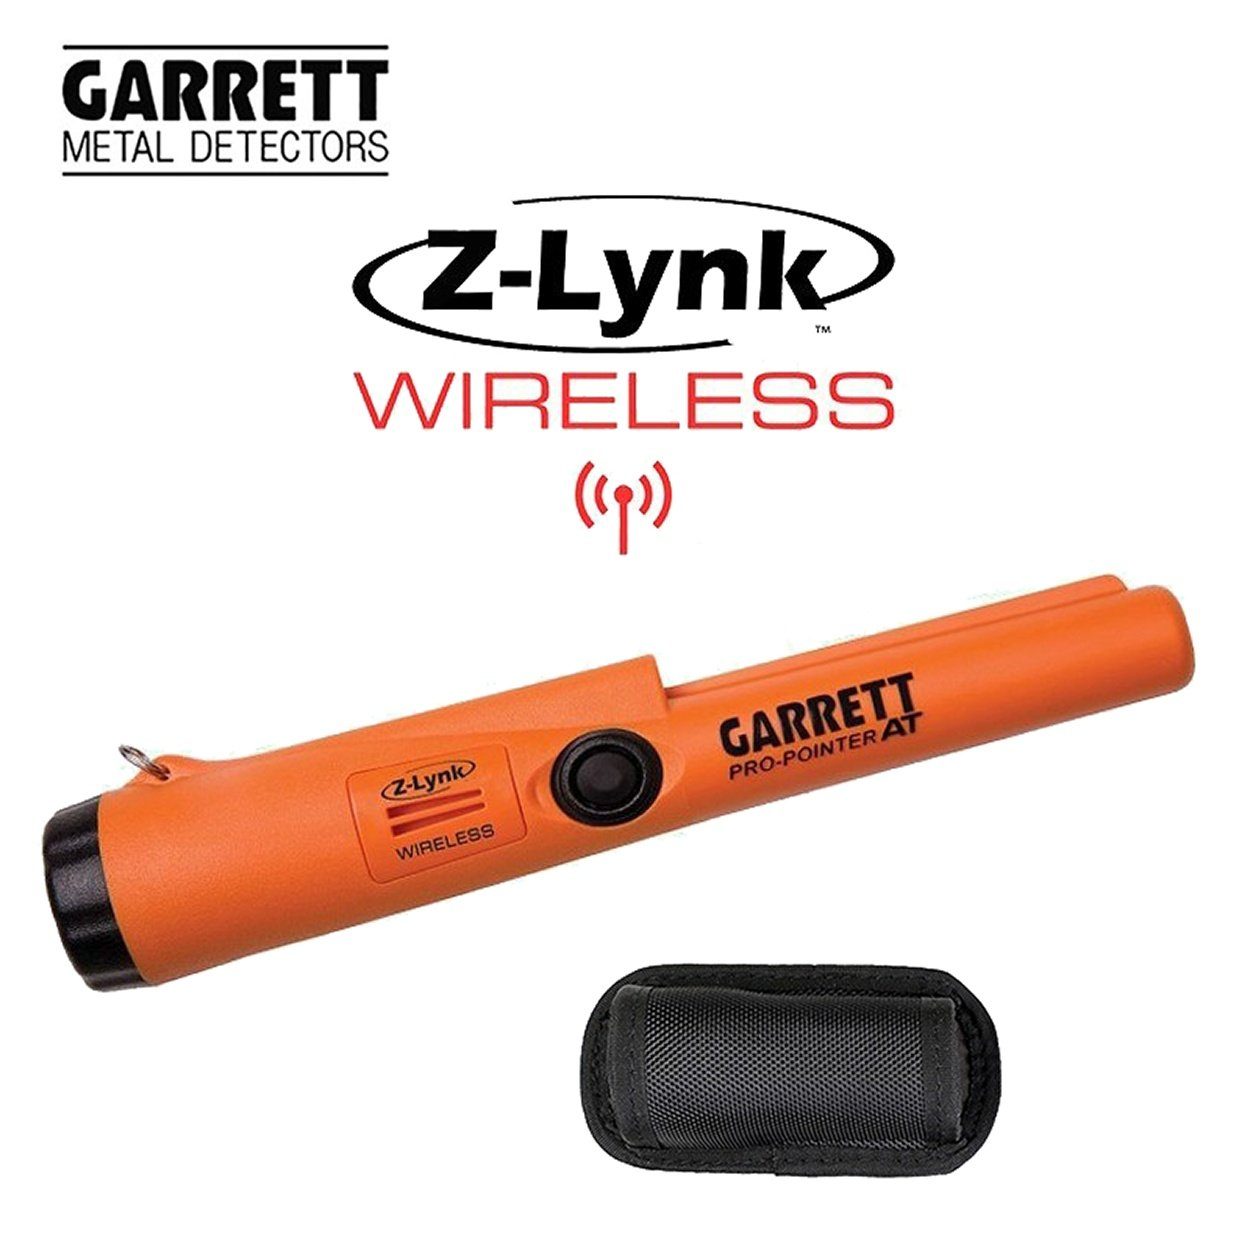 Wasserdicht AT Pro Pinpointer, Z-Lynk Metalldetektor Garrett Wireless Pointer